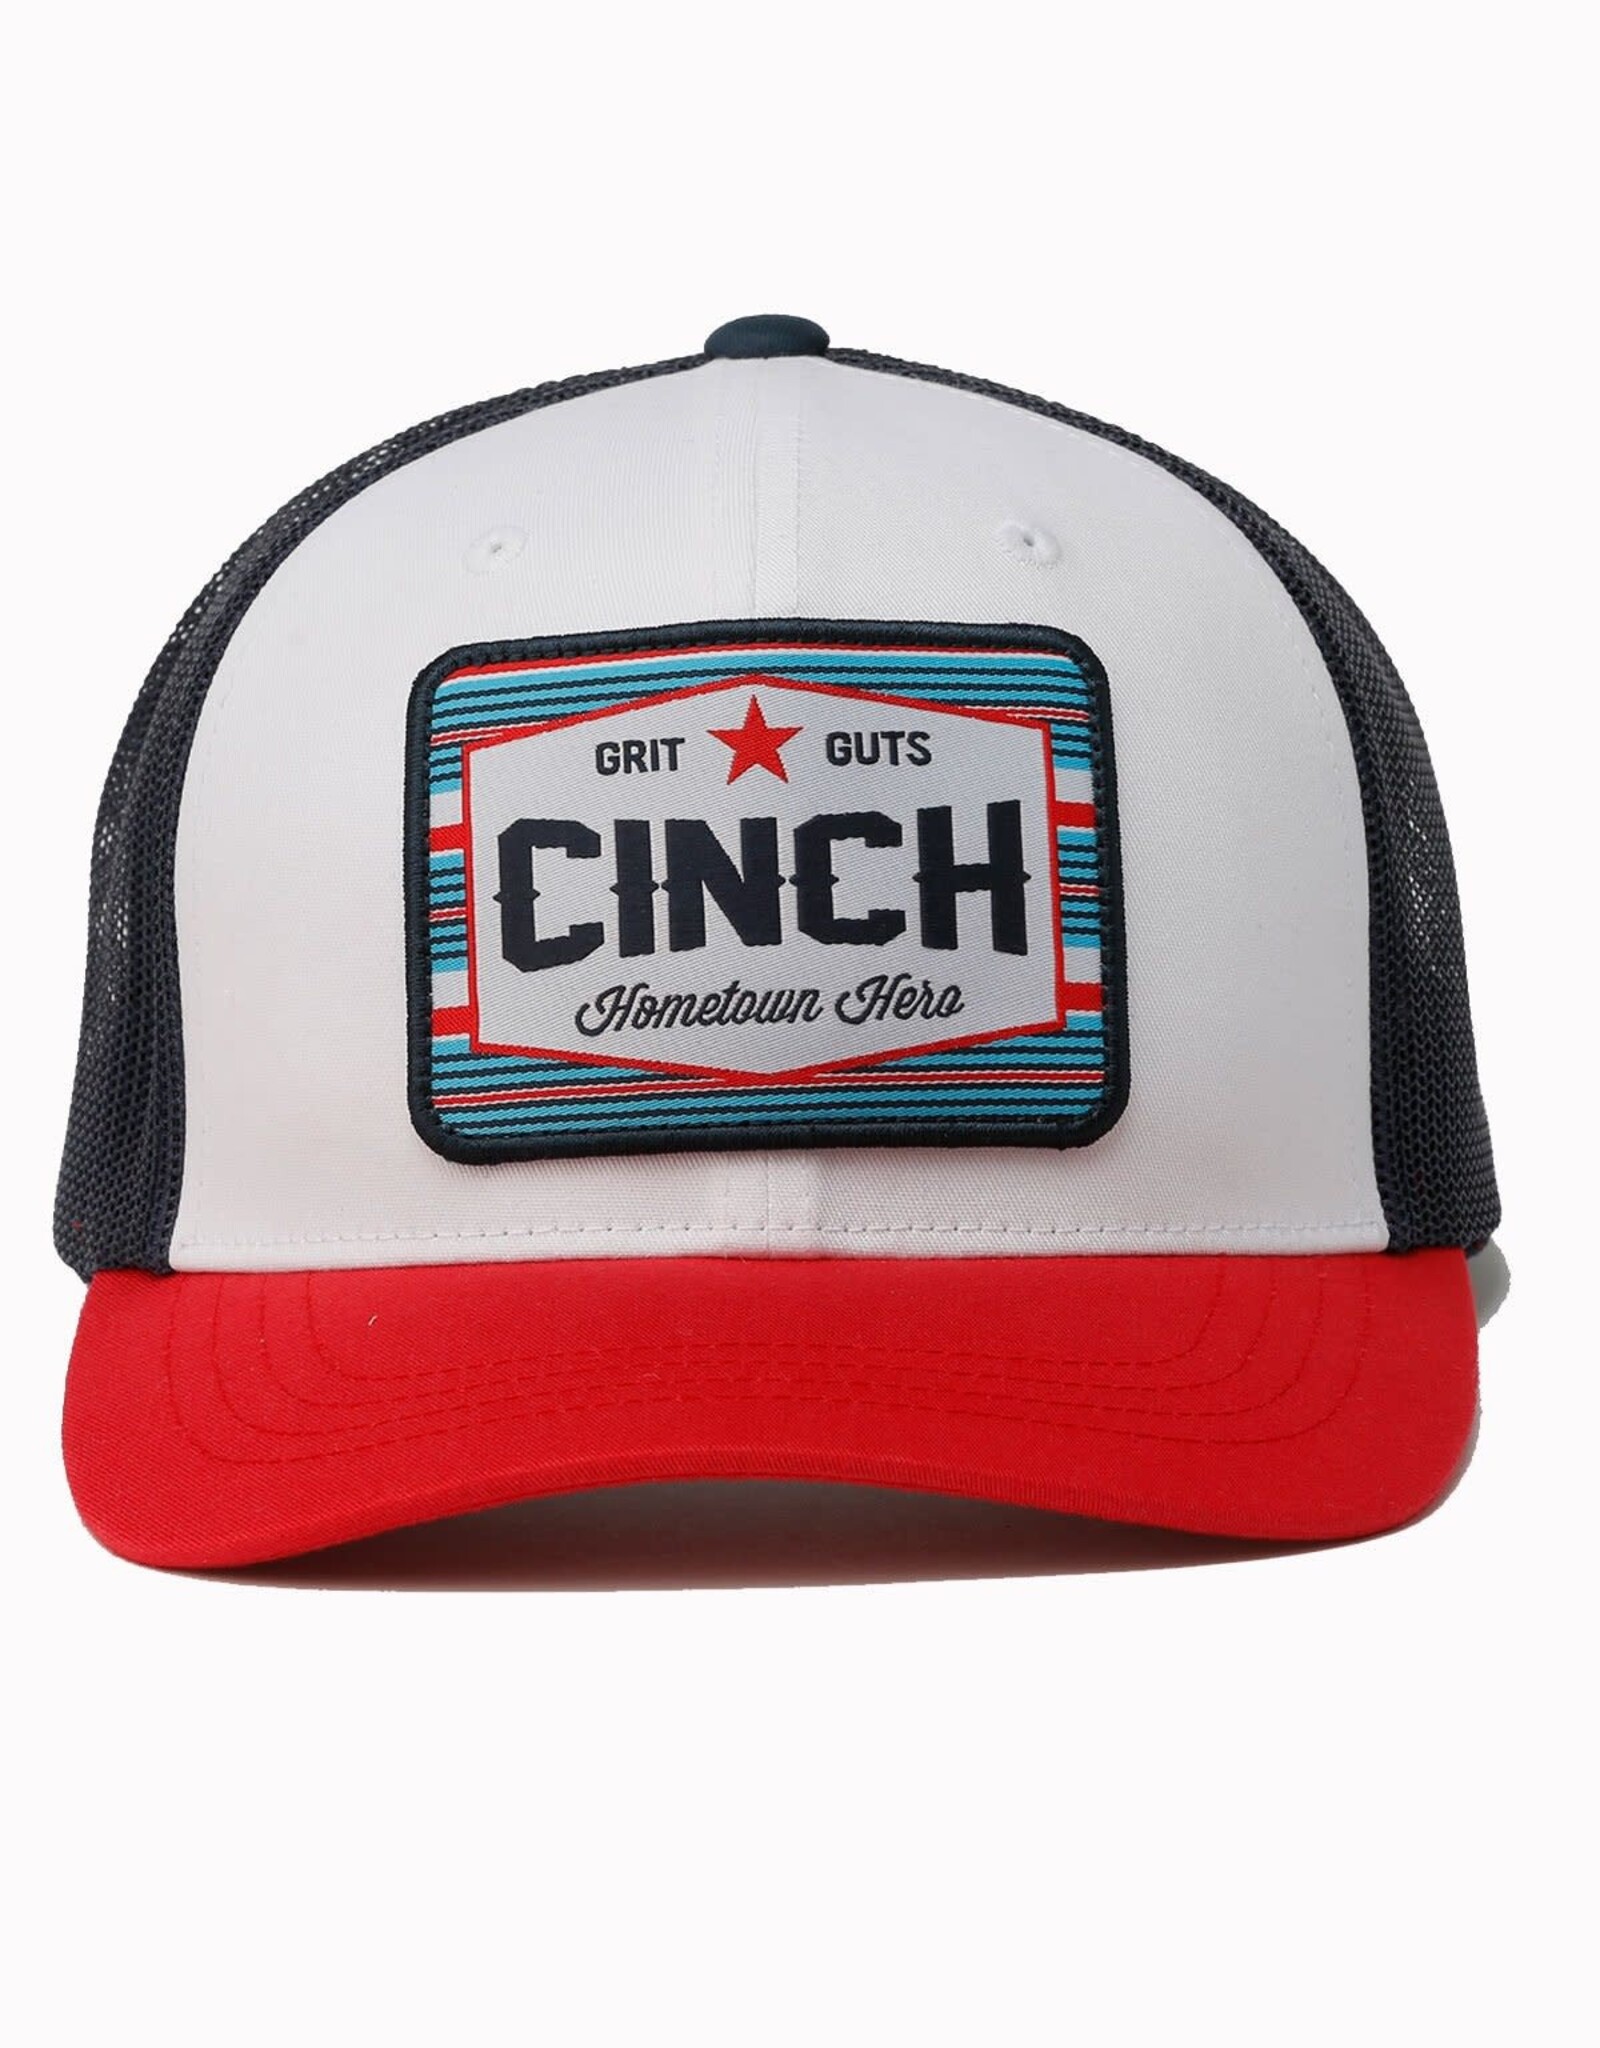 Cinch Cinch Red White Blue Grit Guts Mesh Trucker Ball Cap